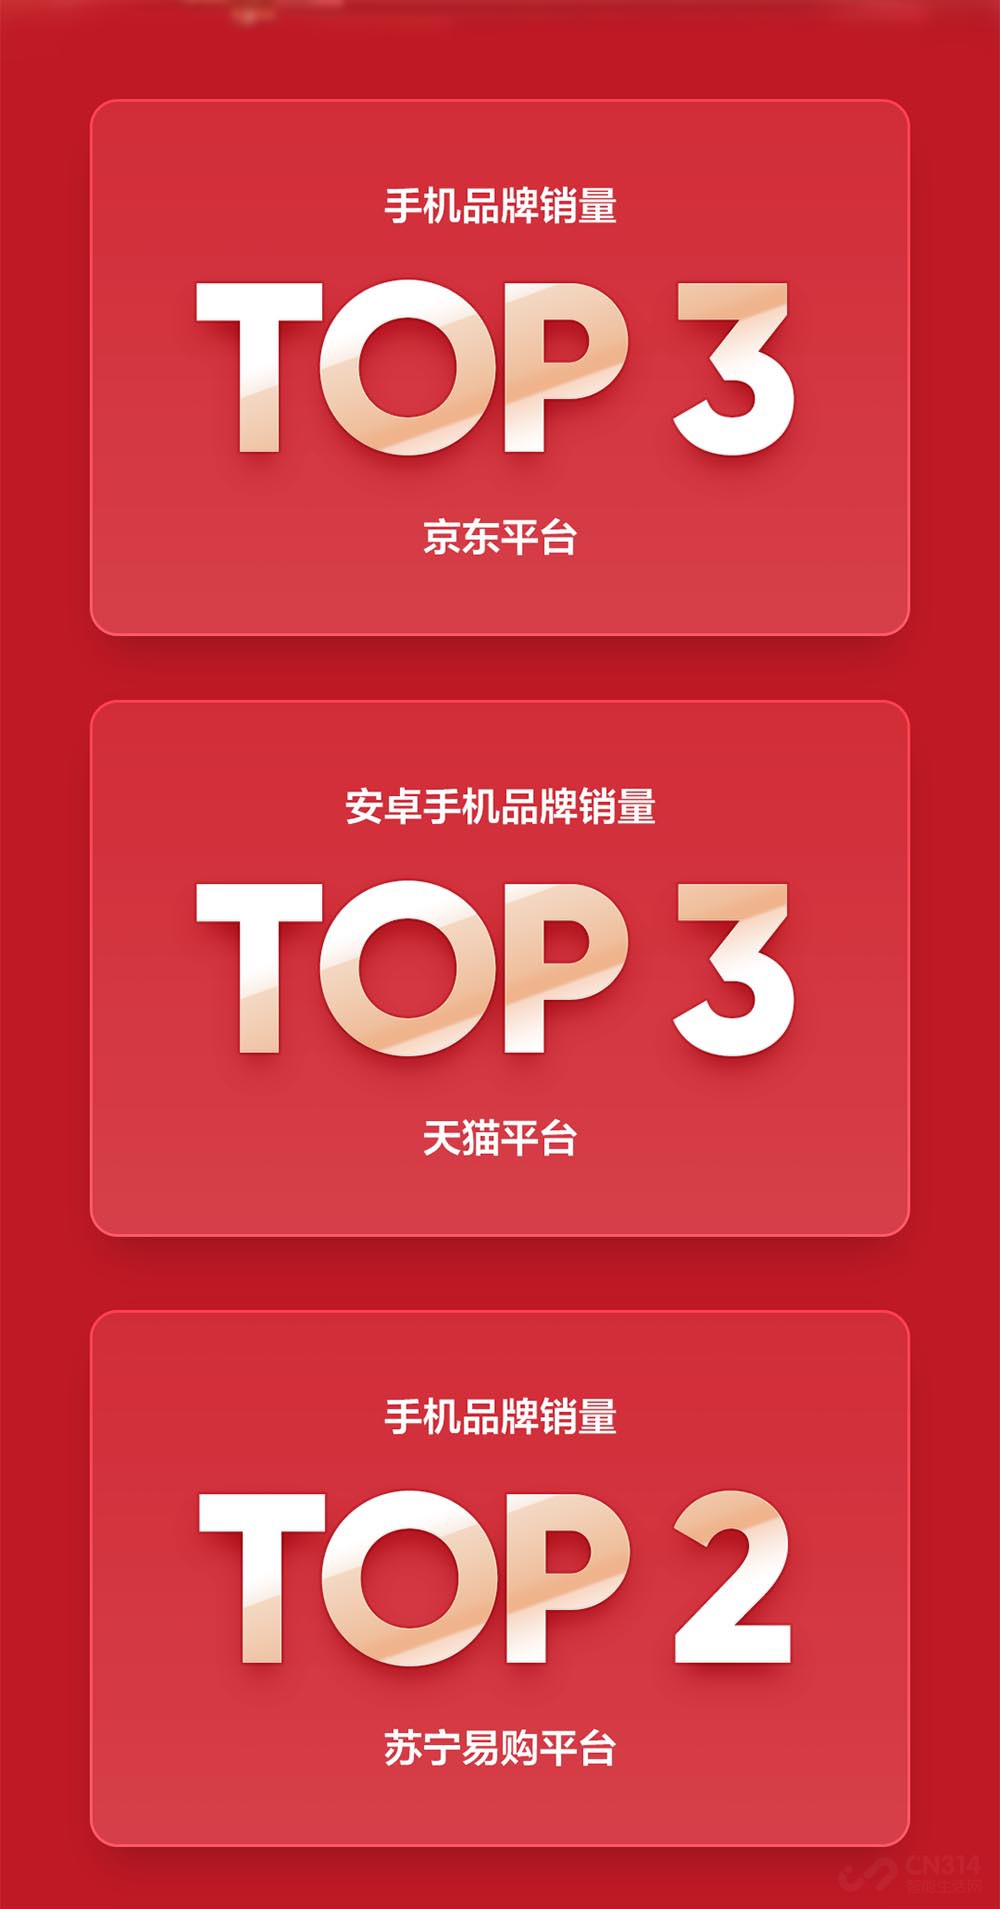 澎湃新闻苹果手机苏宁大卖香港苏宁购买苹果7购机小票